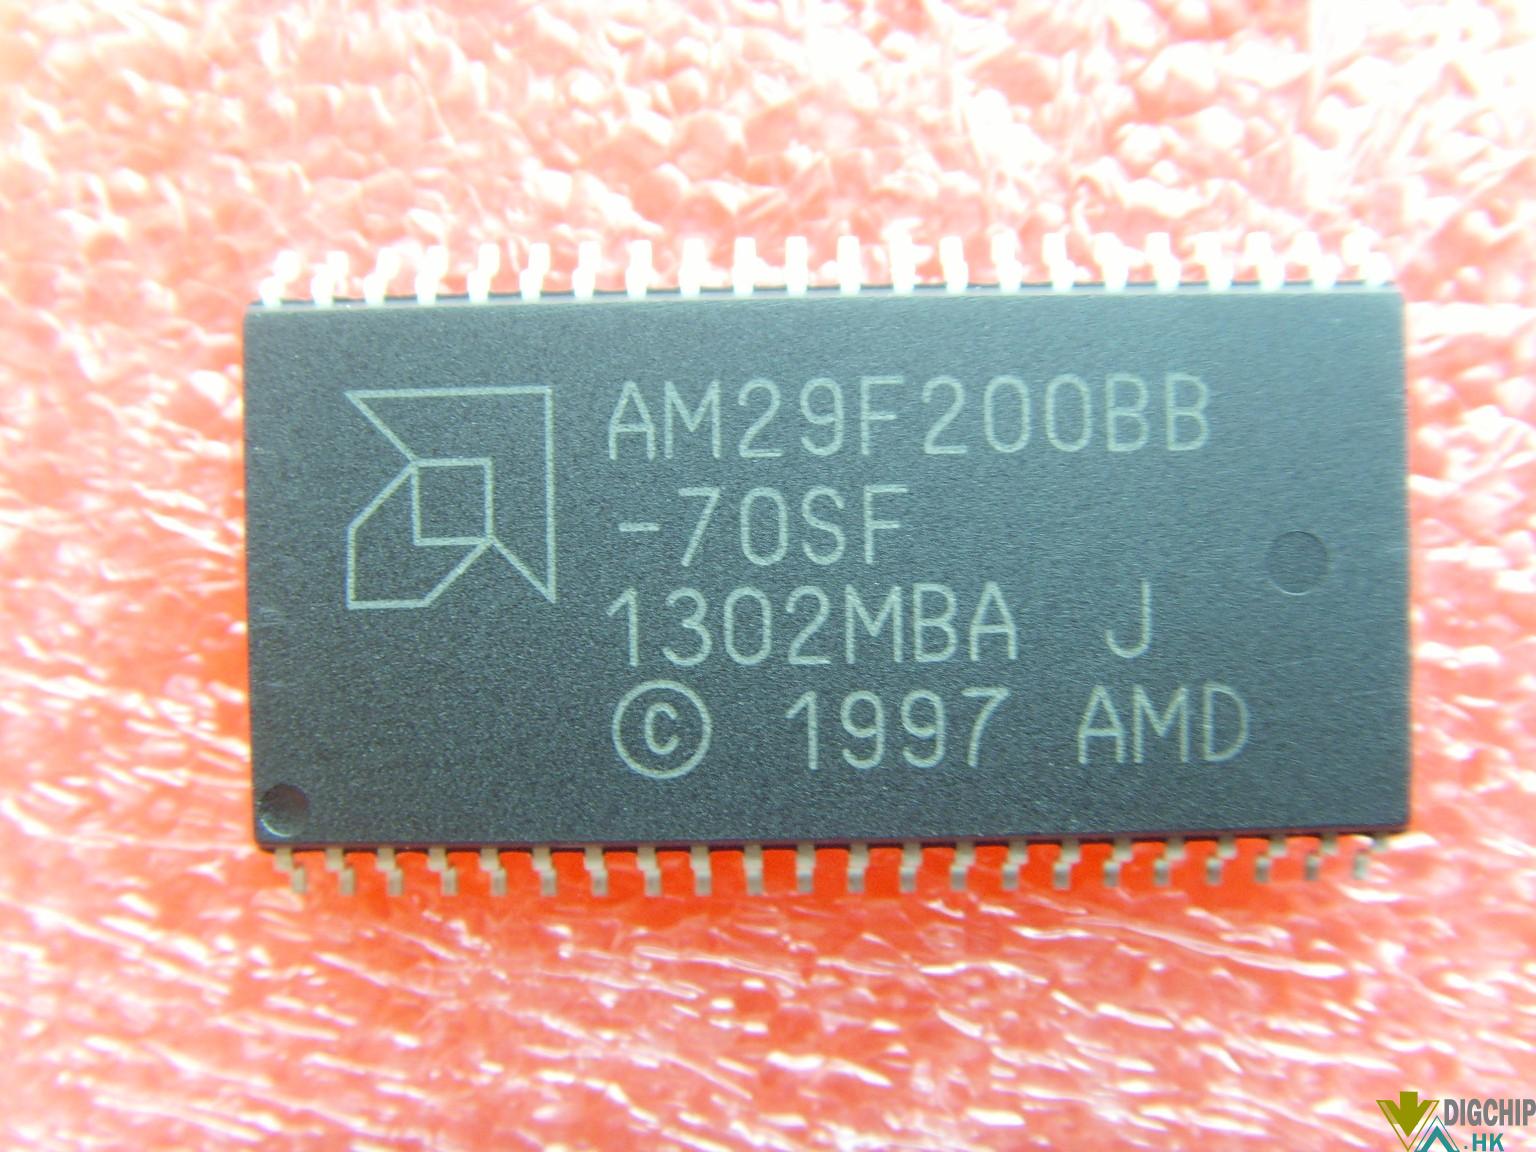 AM29F200BB-70SF